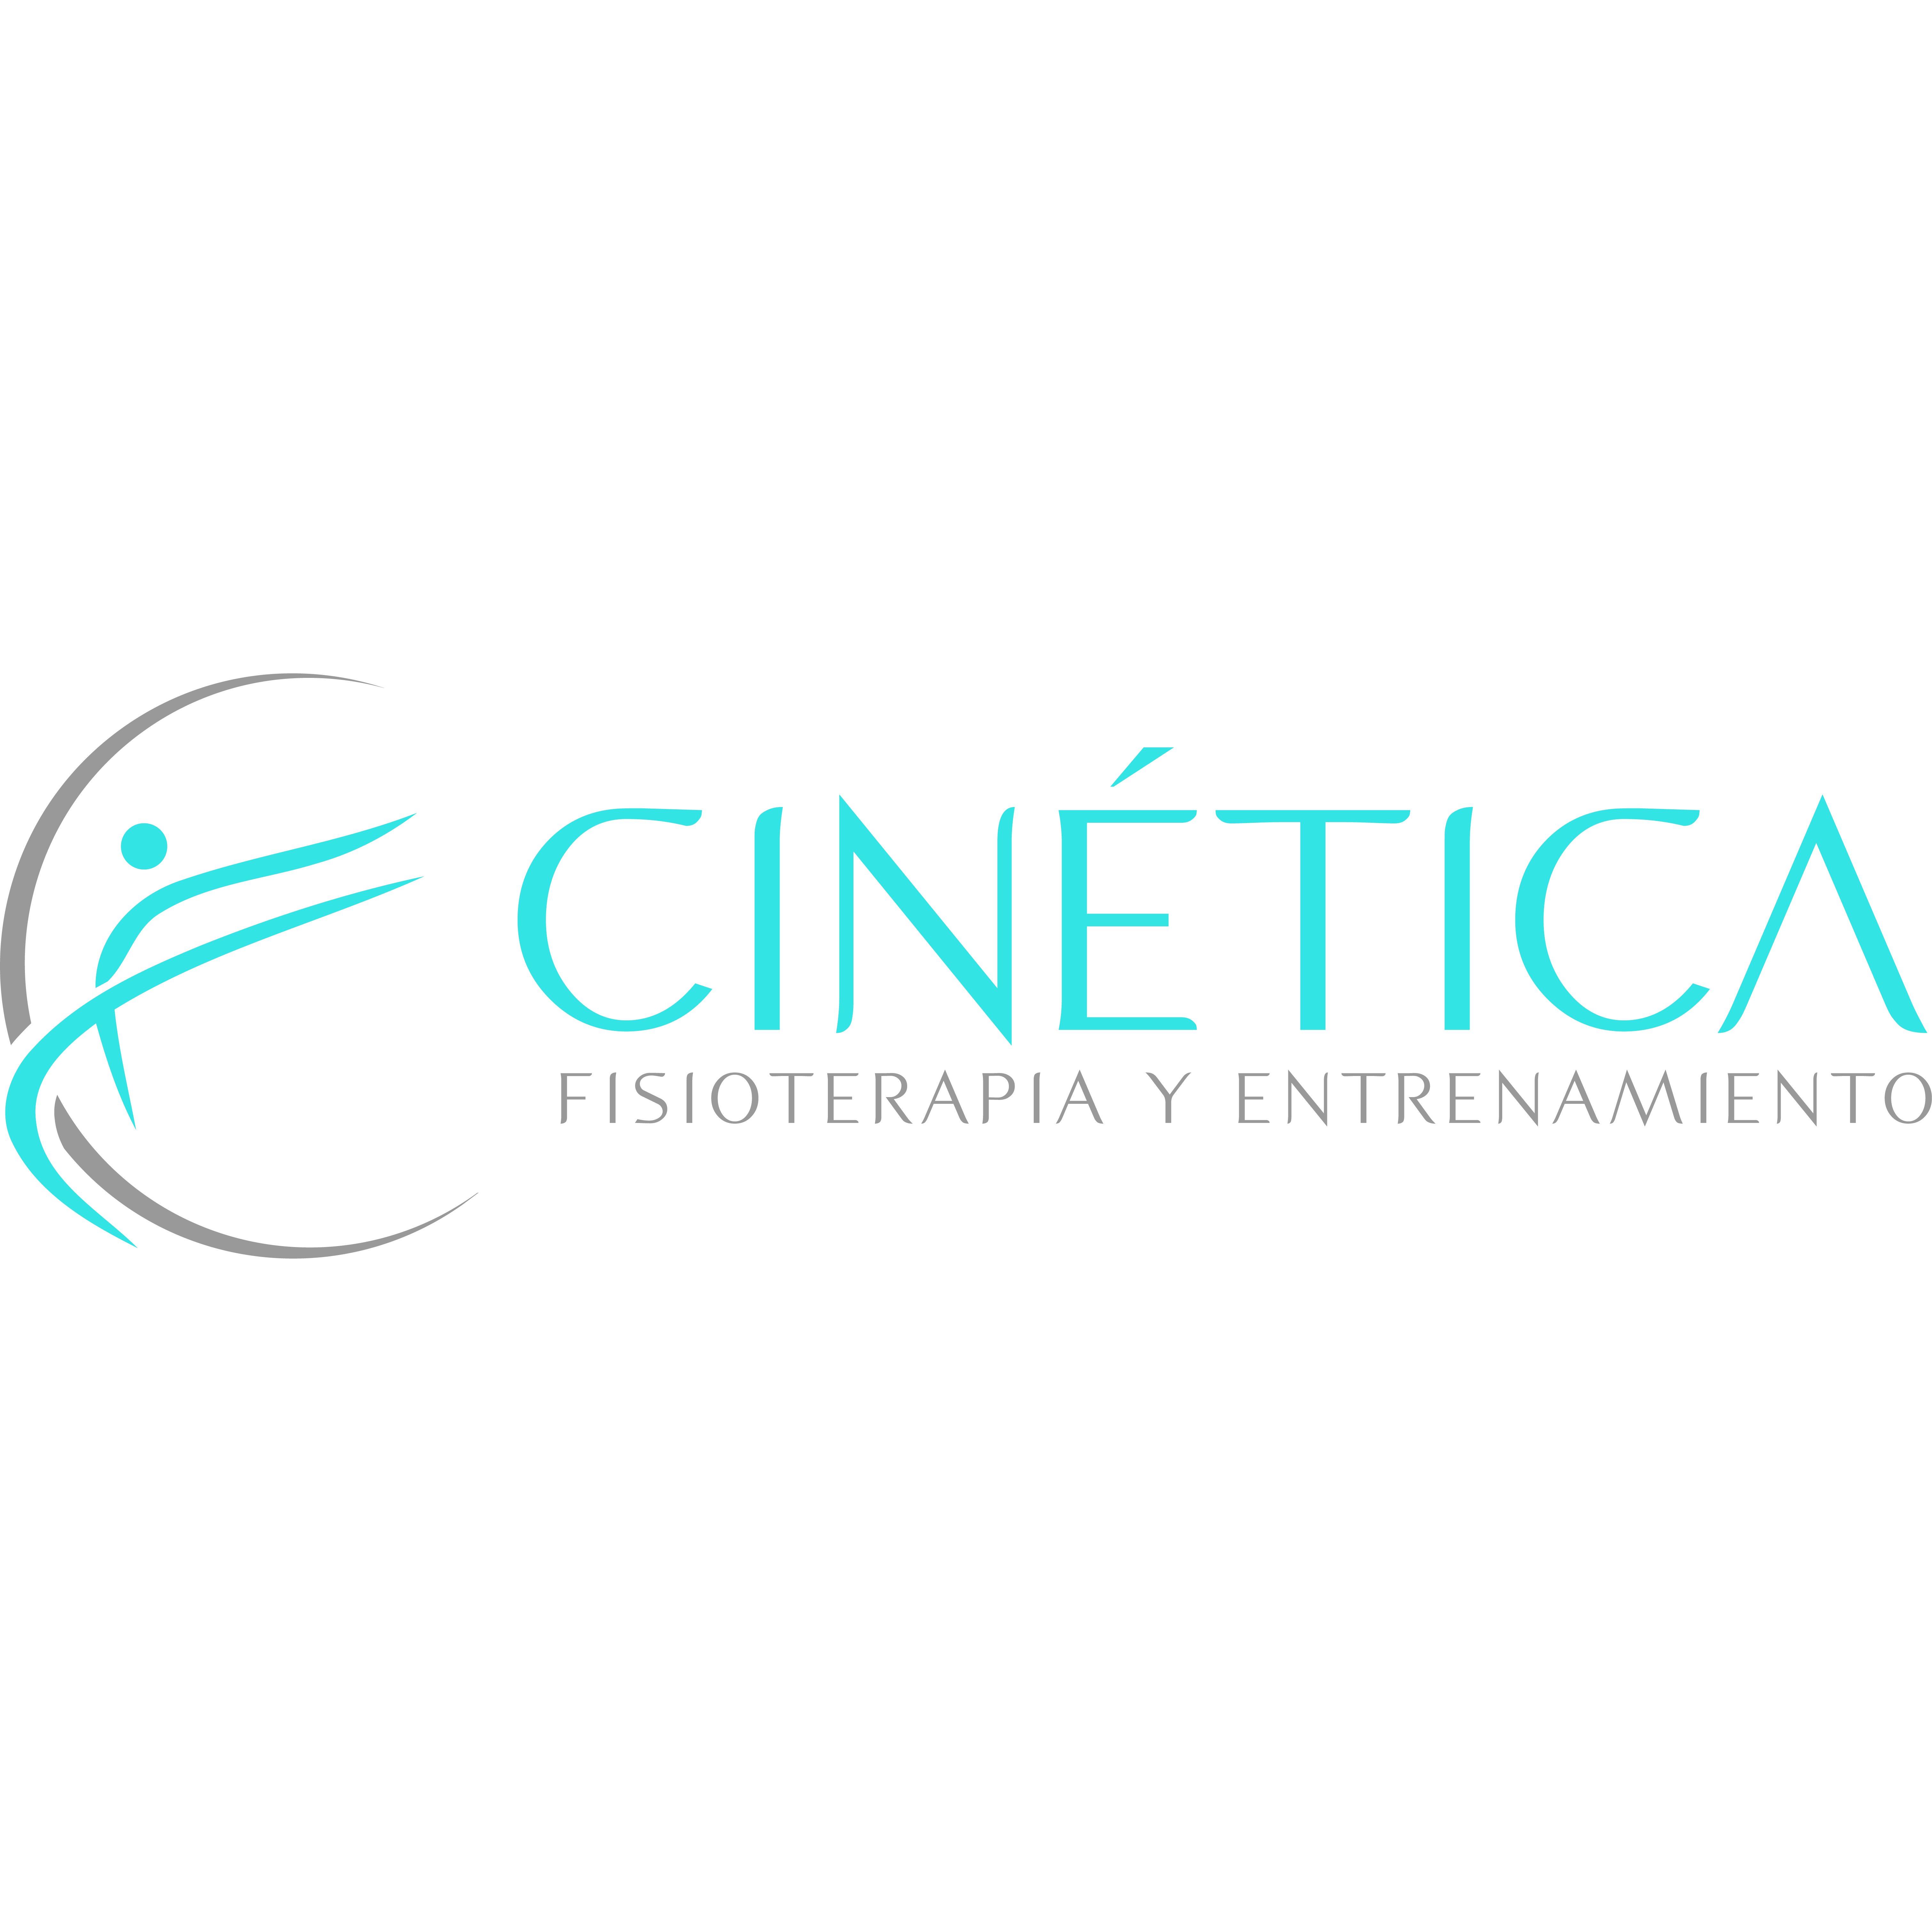 Clínica Cinética Fisioterapia y entrenamiento Tomares Logo